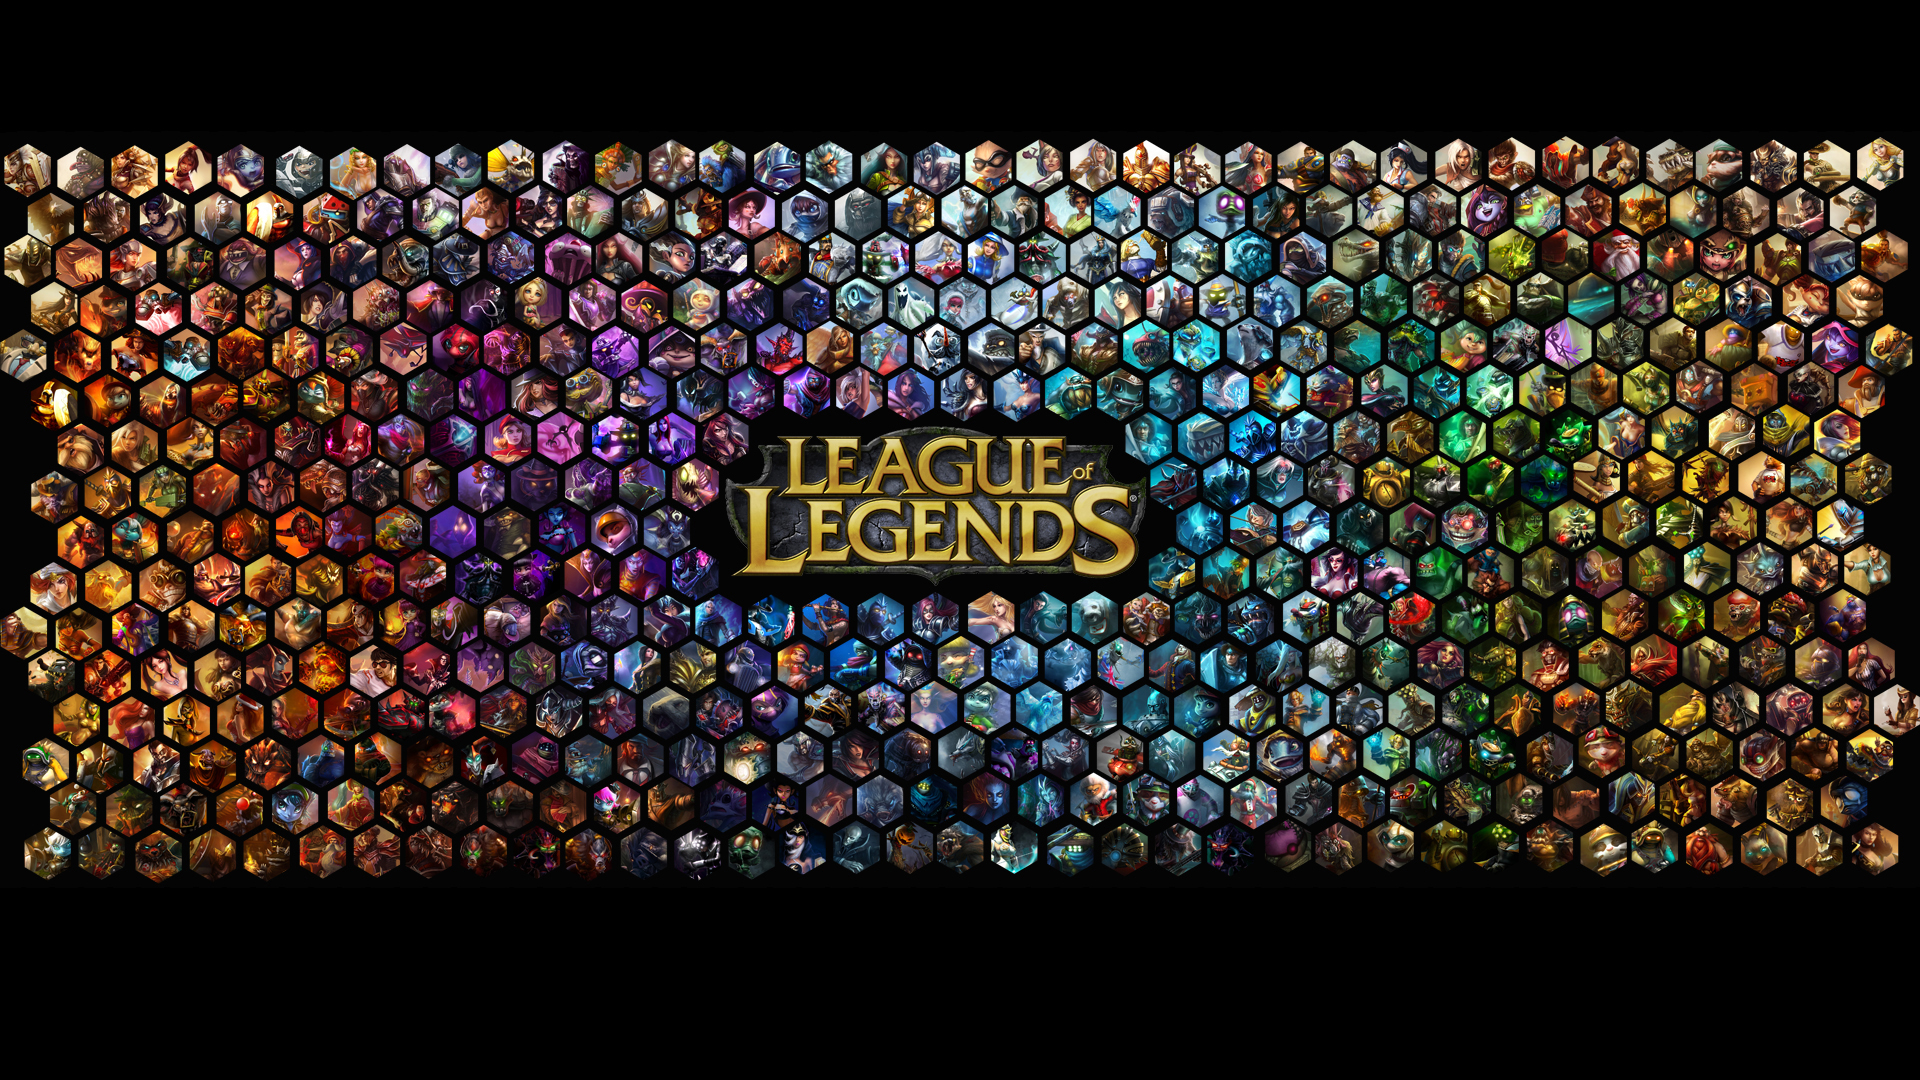 League of Legends teve receita de 624 milhões de dólares em 2013